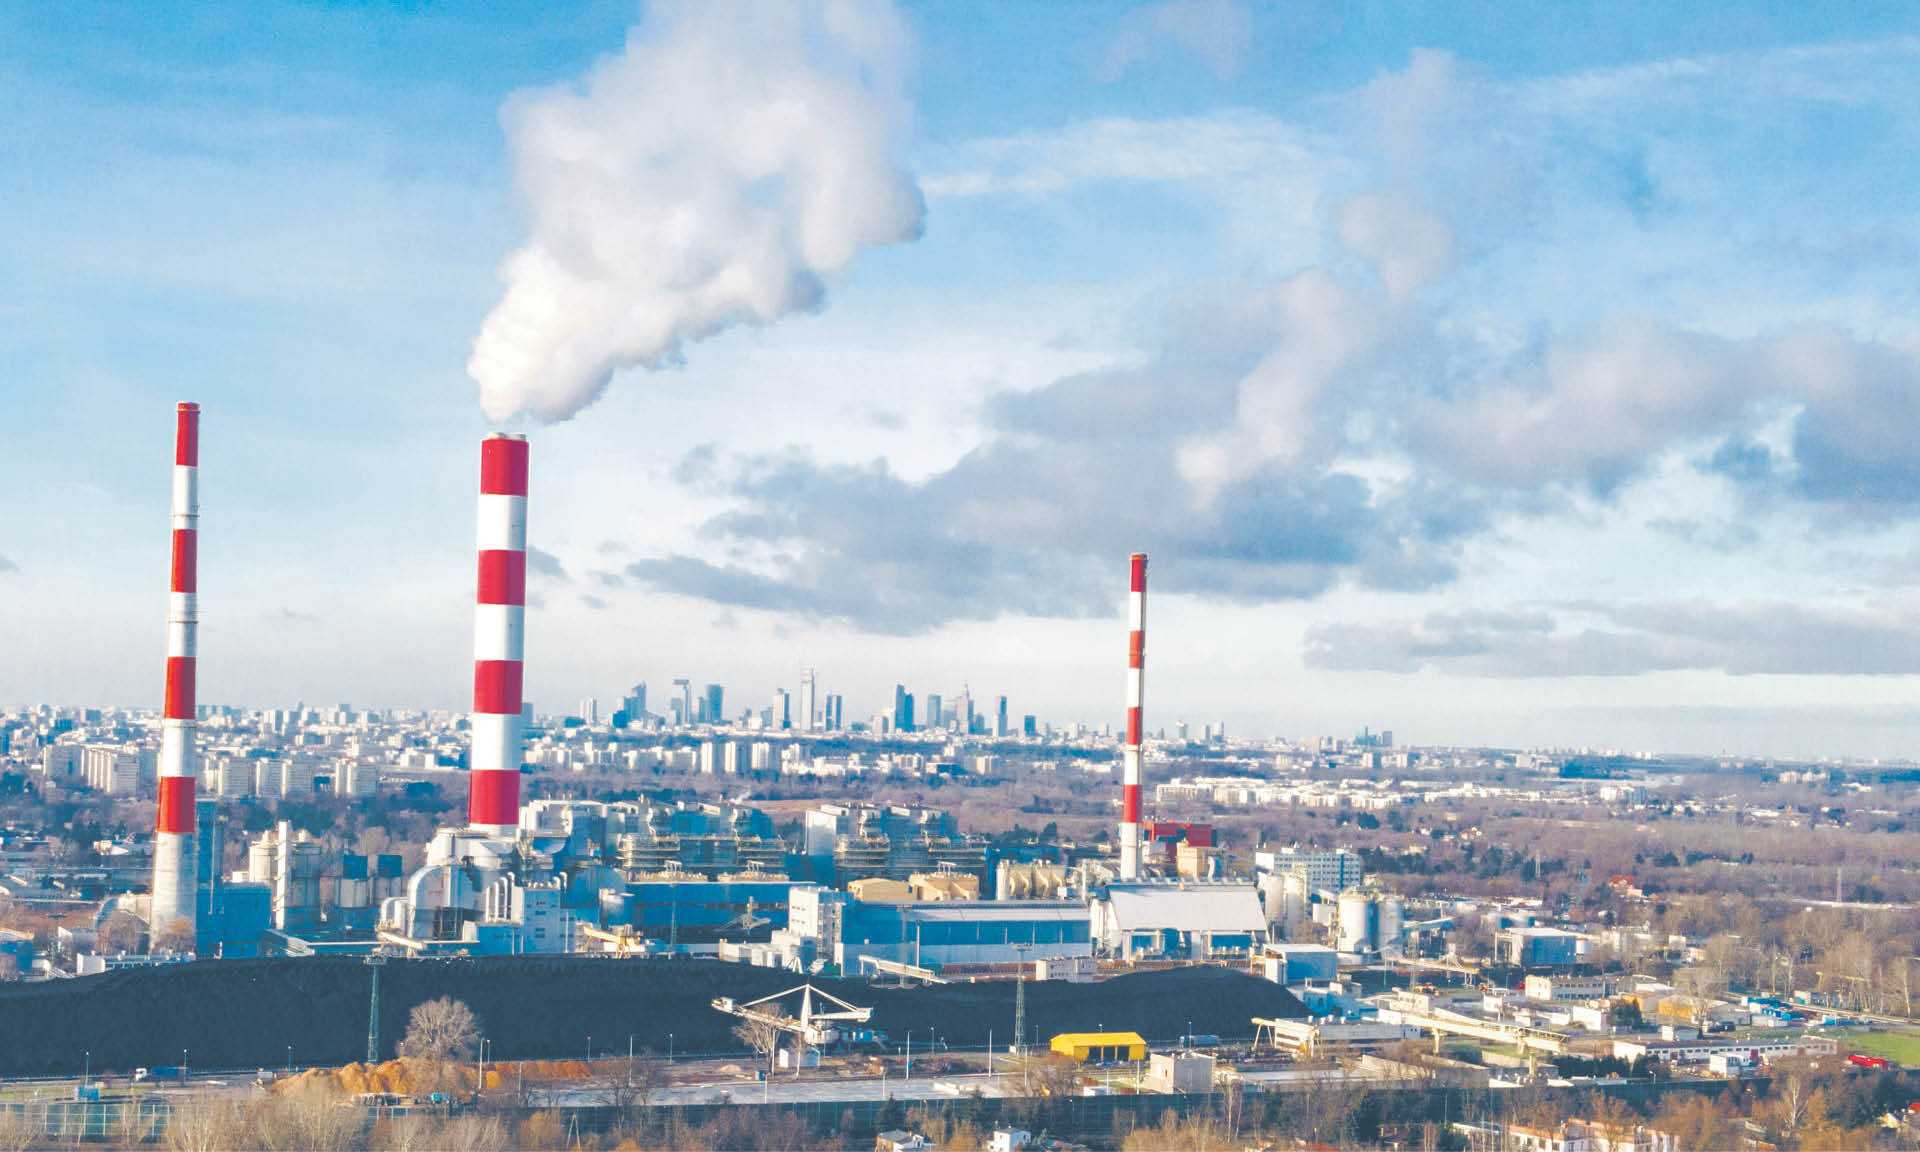 Rząd ma do rozwiązania problem polegający na tym, że elektrownie, kupując relatywnie tani węgiel od polskich kopalń, sprzedają prąd niewspółmiernie drogo